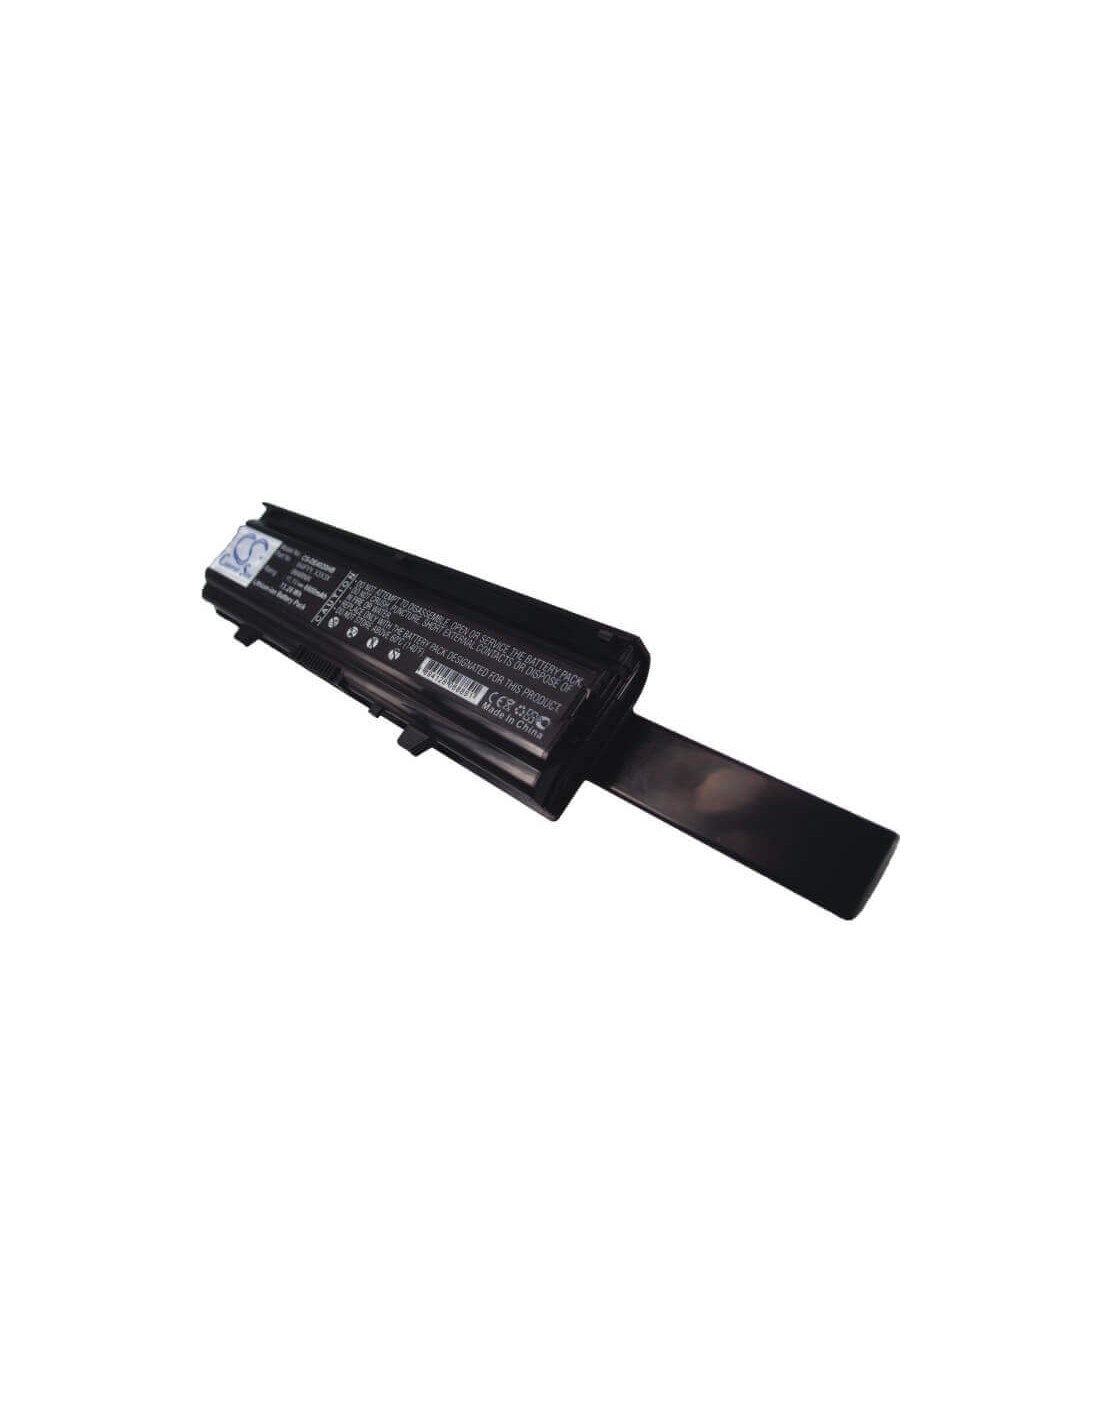 Black Battery for Dell Inspiron 14v, Inspiron 14r-346, Inspiron 14vr 11.1V, 6600mAh - 73.26Wh